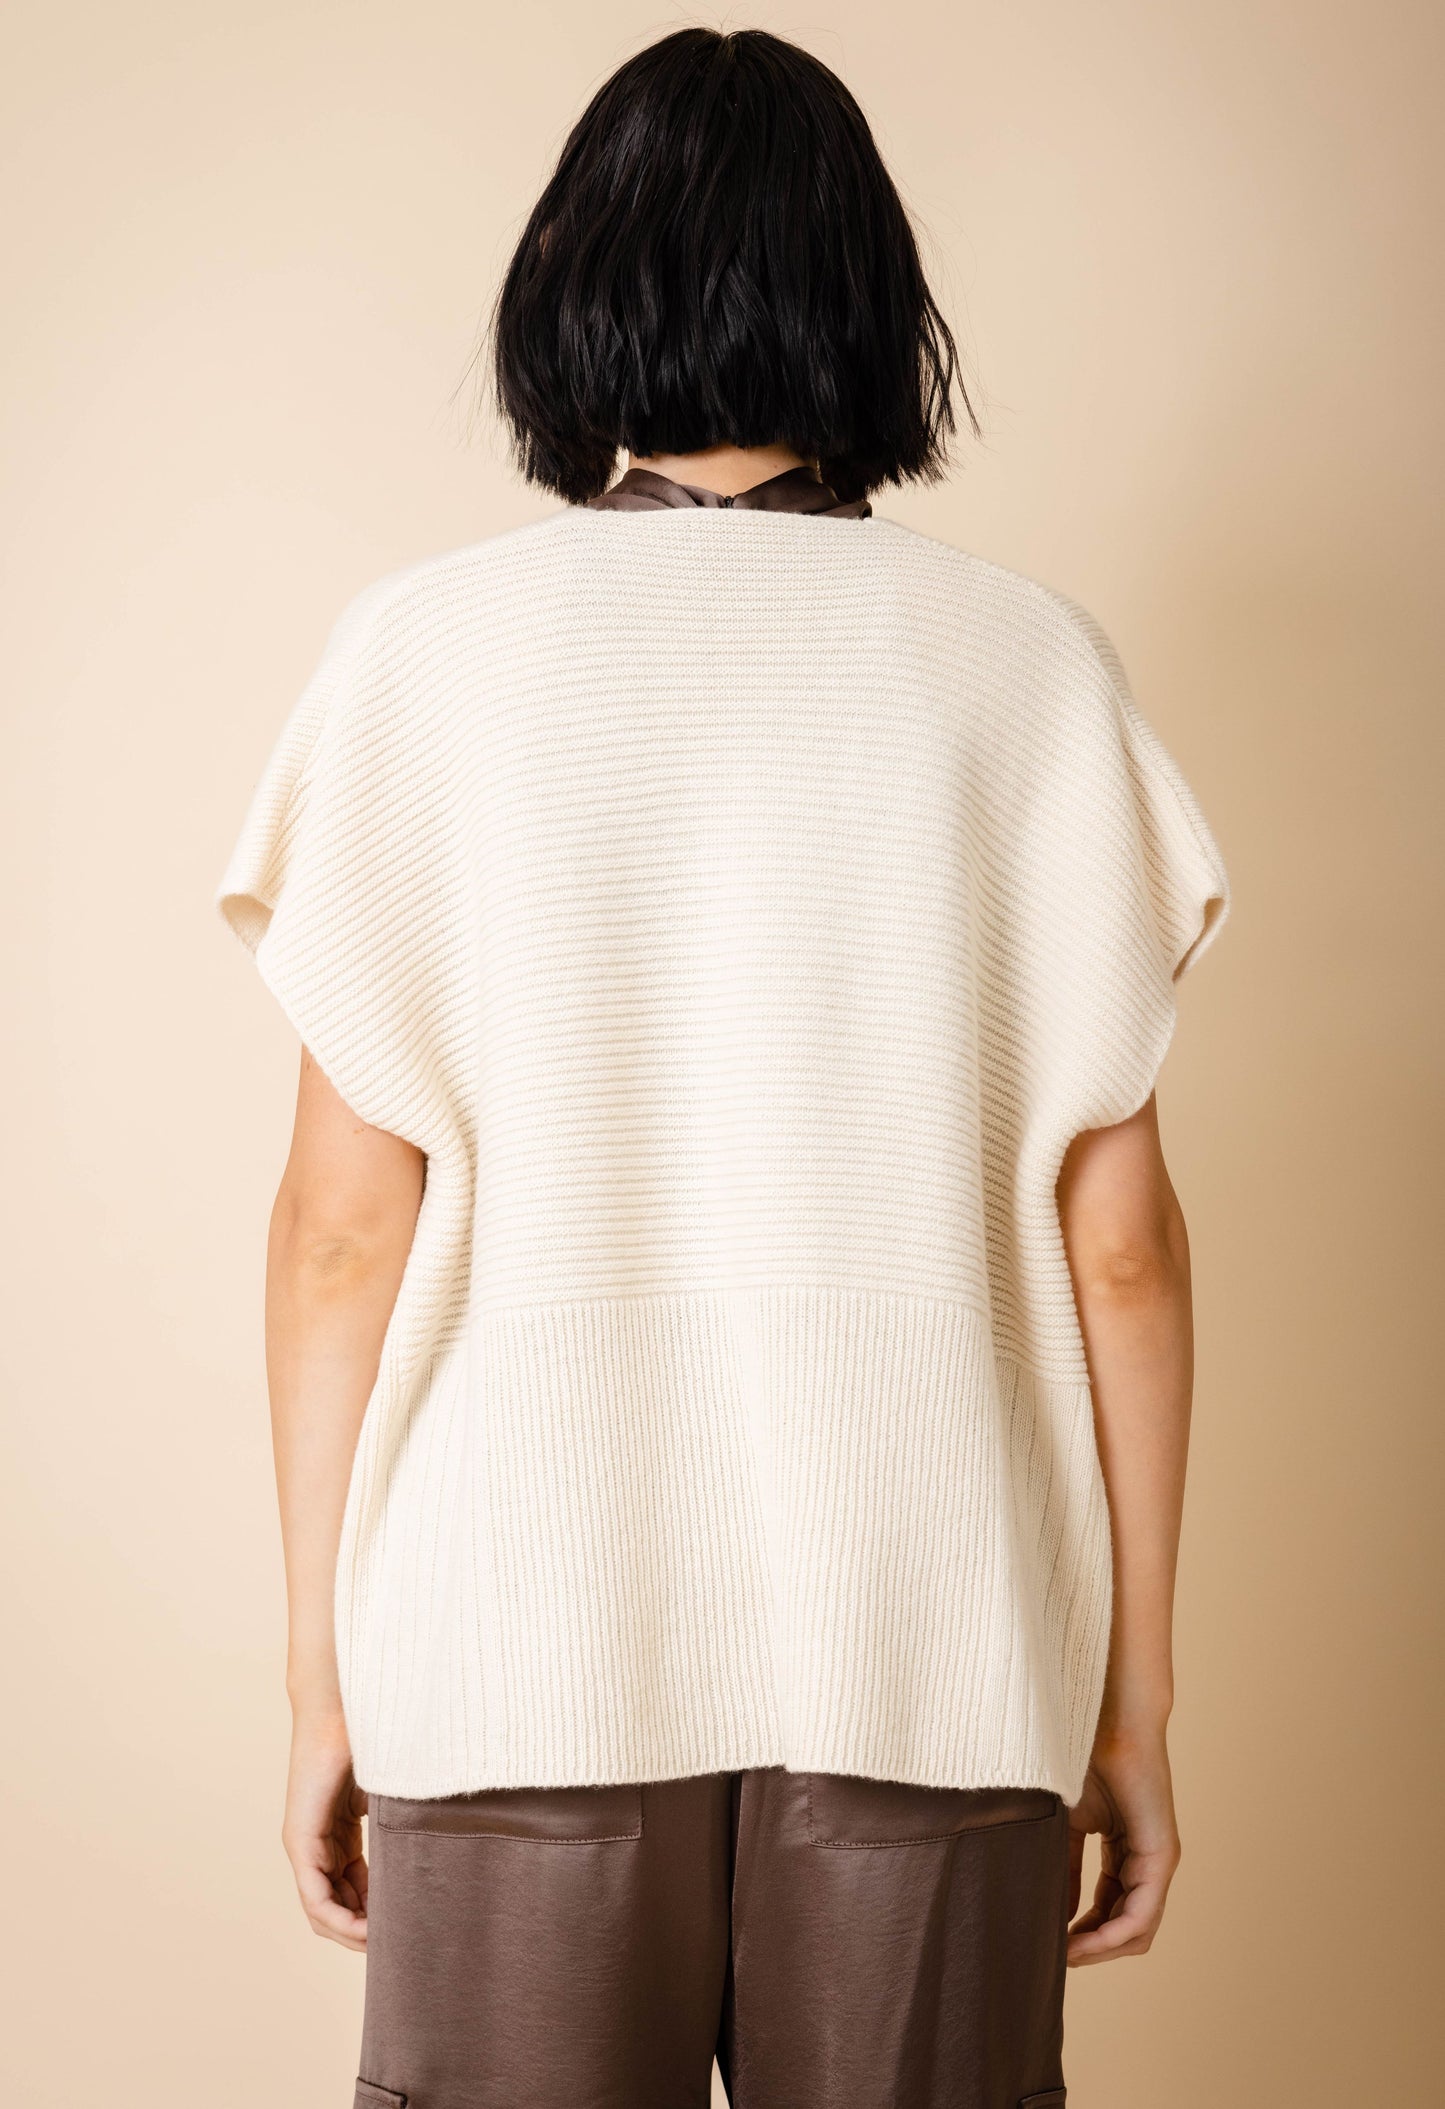 Sweater Vest in Cream